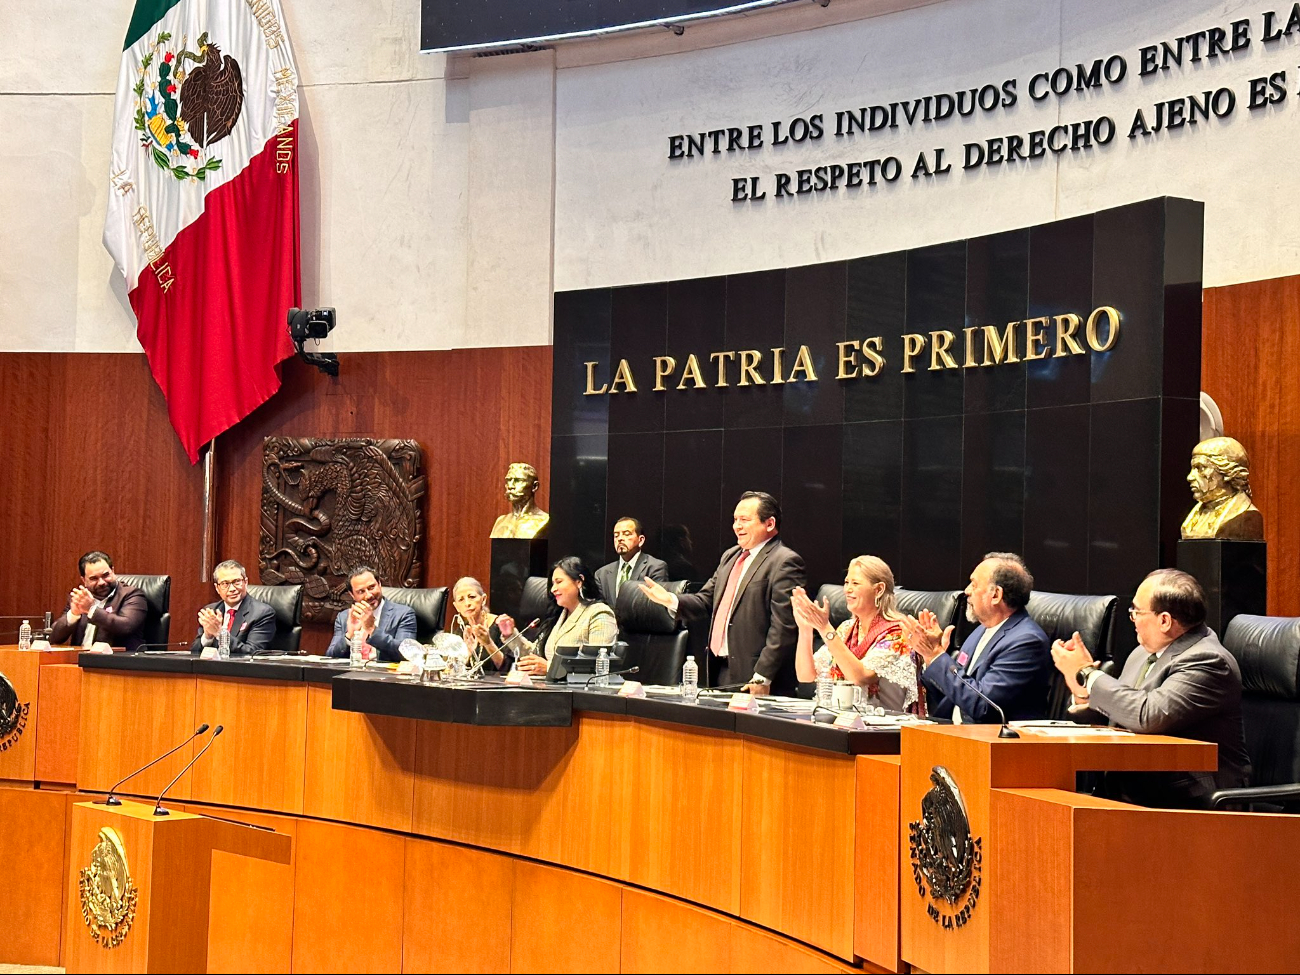 En el marco del evento, Joaquín Díaz Mena se comprometió a trabajar incansablemente en mejorar las condiciones de vida de todos los yucatecos